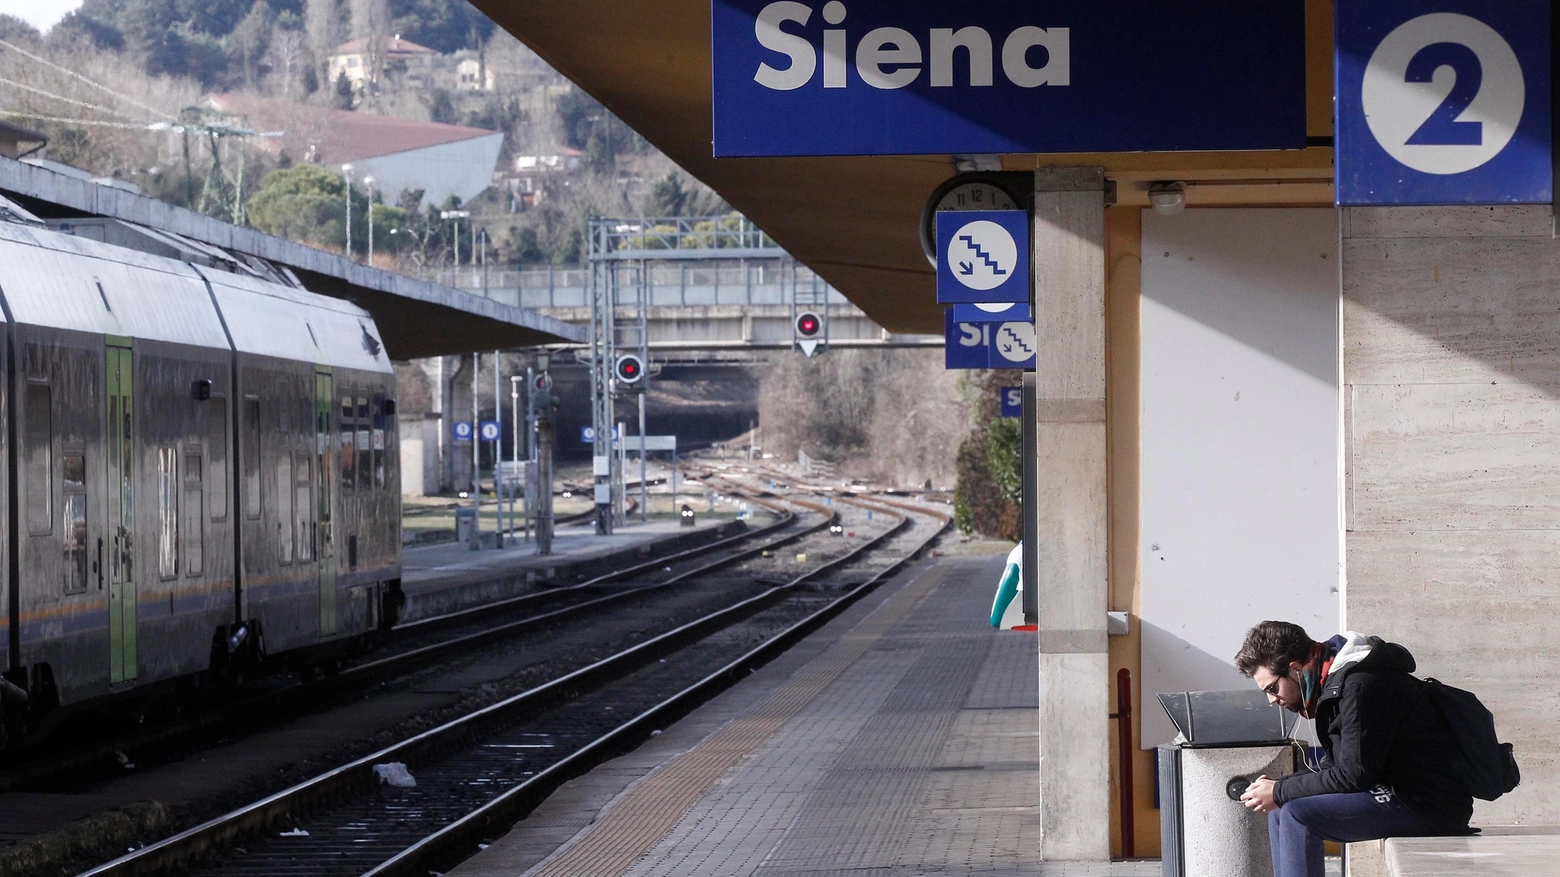 La stazione di Siena (foto d'archivio)